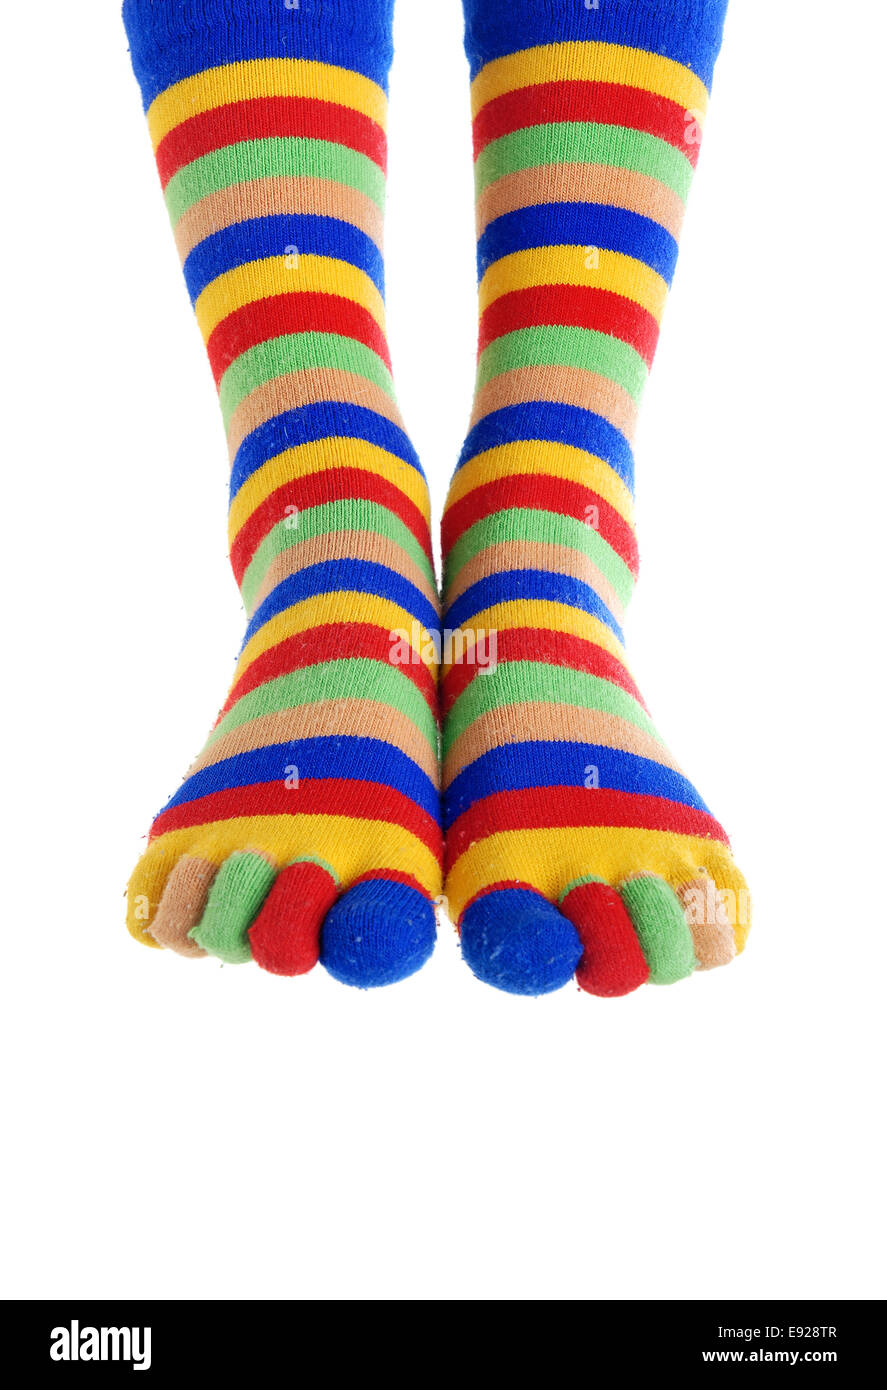 Нога клоуна. Ноги клоуна. Чулки клоуна разноцветные. Клоун в чулках. Колготки разноцветные детские клоунские.